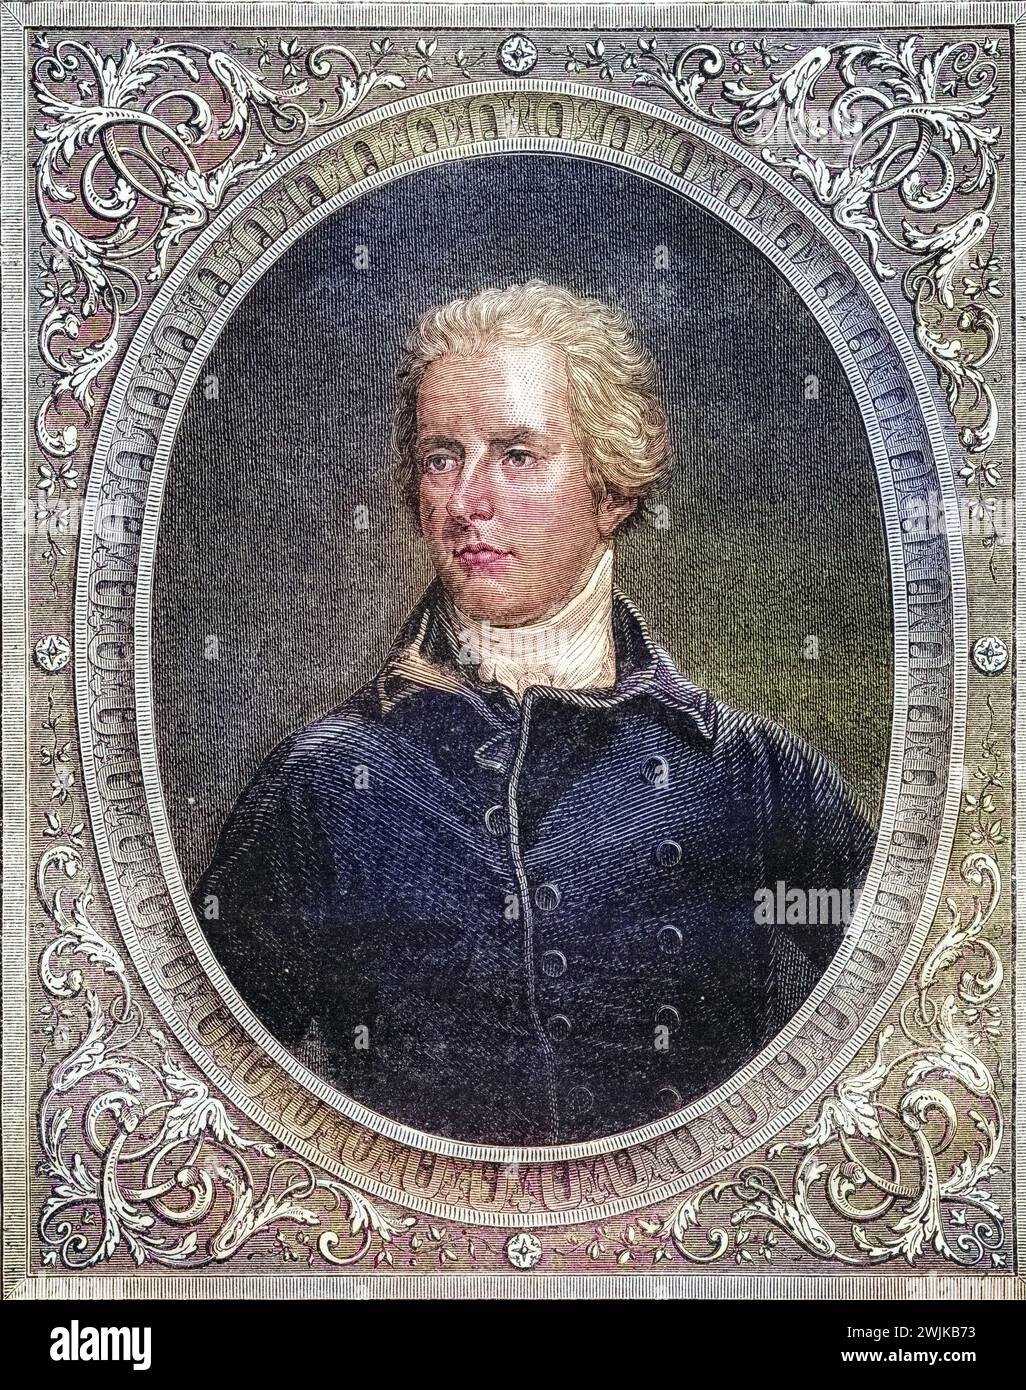 William Pitt Amherst, 1. Earl Amherst (geb. 14. Januar 1773 in Bath; Std. 13. März 1857 in Knole House, Sevenoaks) war ein britischer Politiker und Staatsmann, Historisch, digital restaurierte Reproduktion von einer Vorlage aus dem 19. Jahrhundert, Datum nicht angegeben Stockfoto